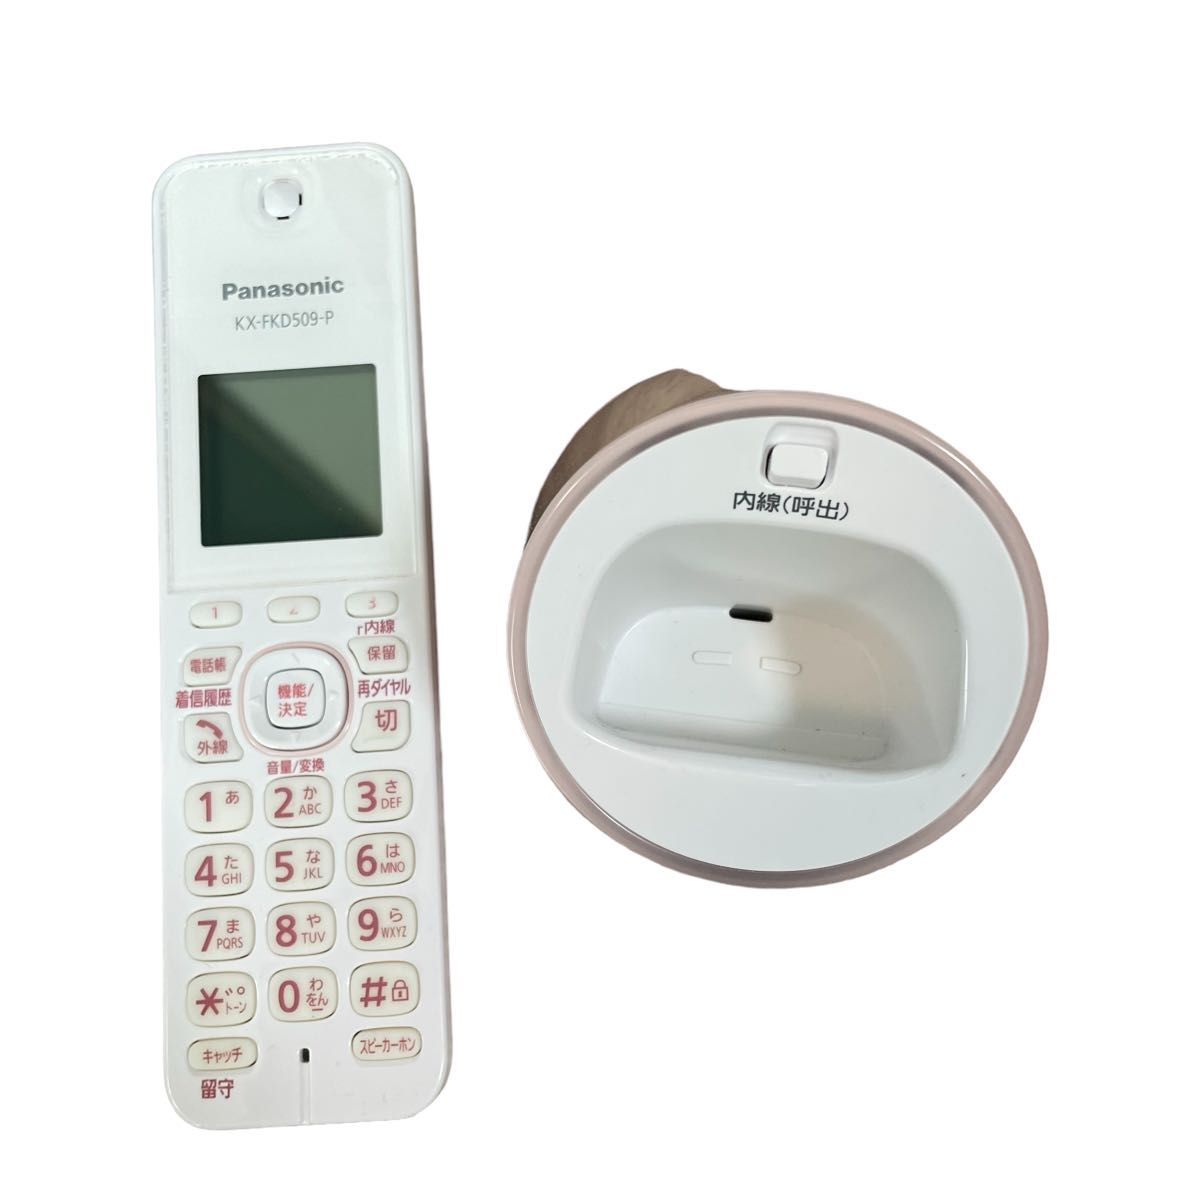 【美品】コードレス電話機 VE-GDS02DL ピンク パナソニック Panasonic  KX-FKD509-T